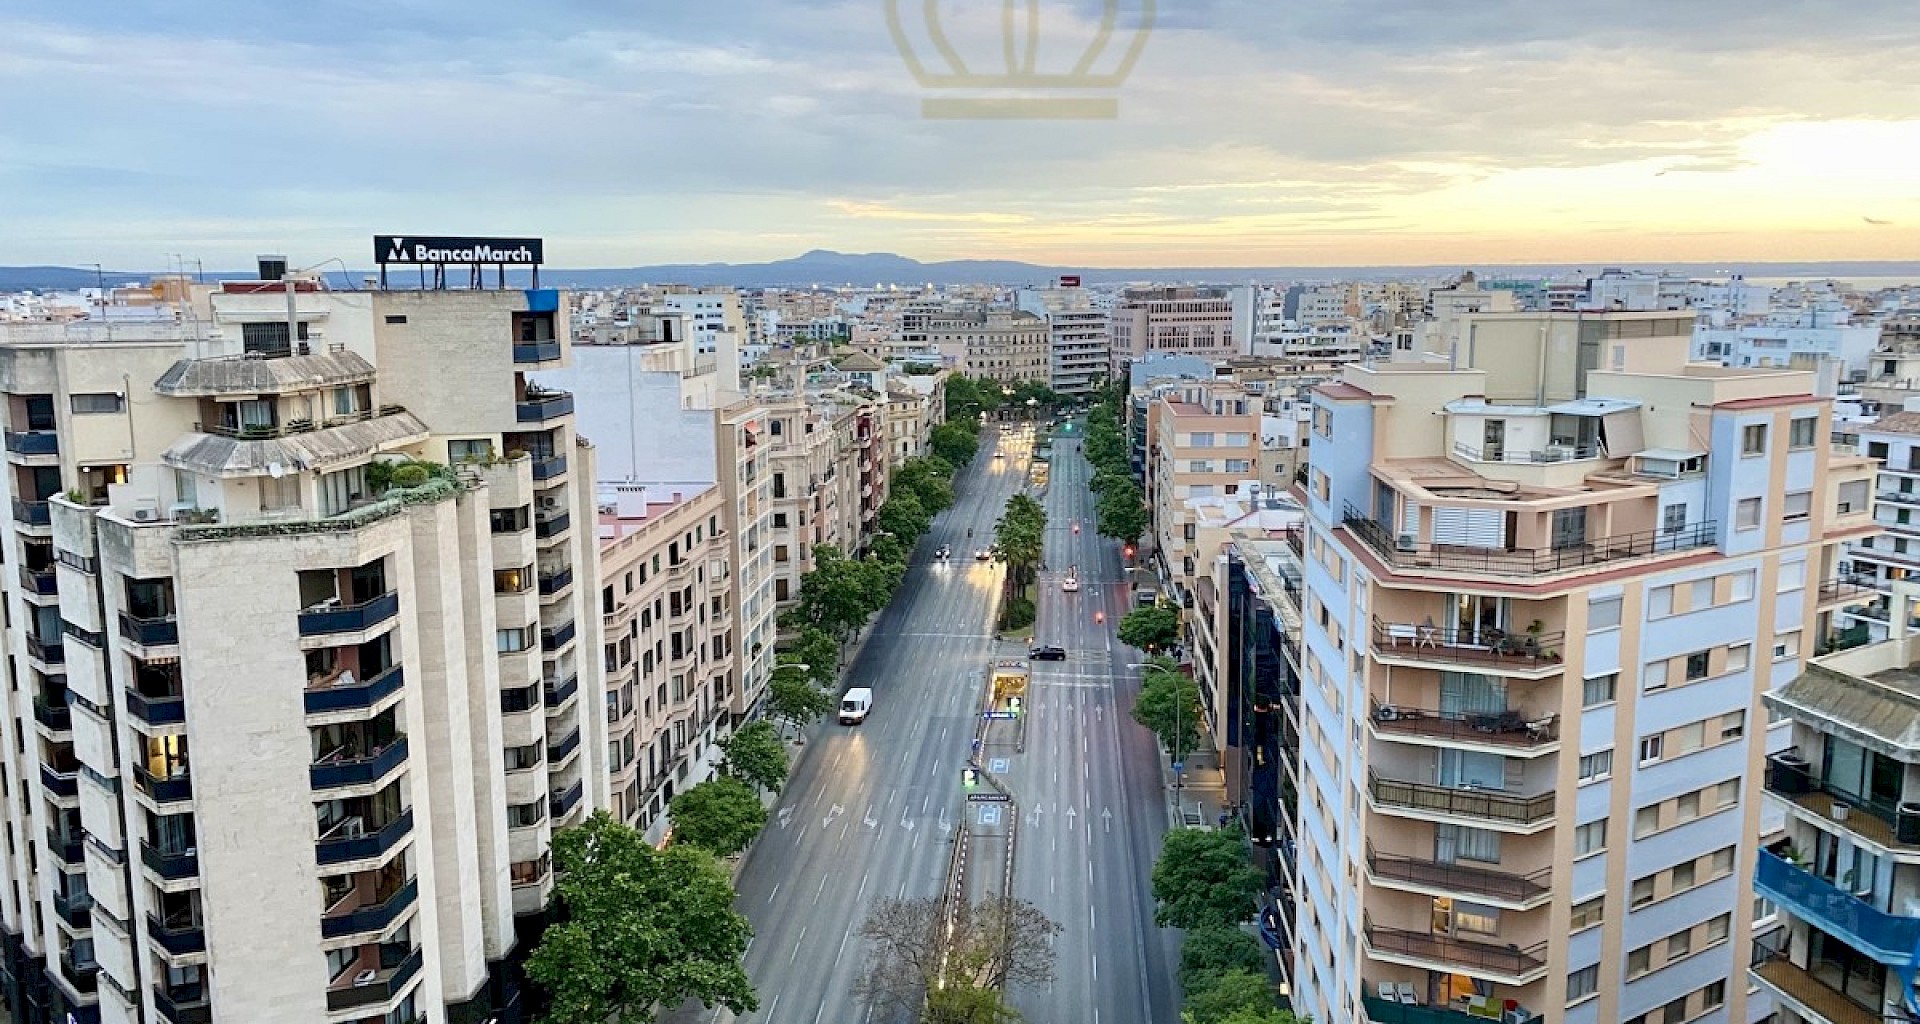 KROHN & LUEDEMANN Piso de lujo reformado en el centro de Palma con vistas al mar Palma City Wohnung